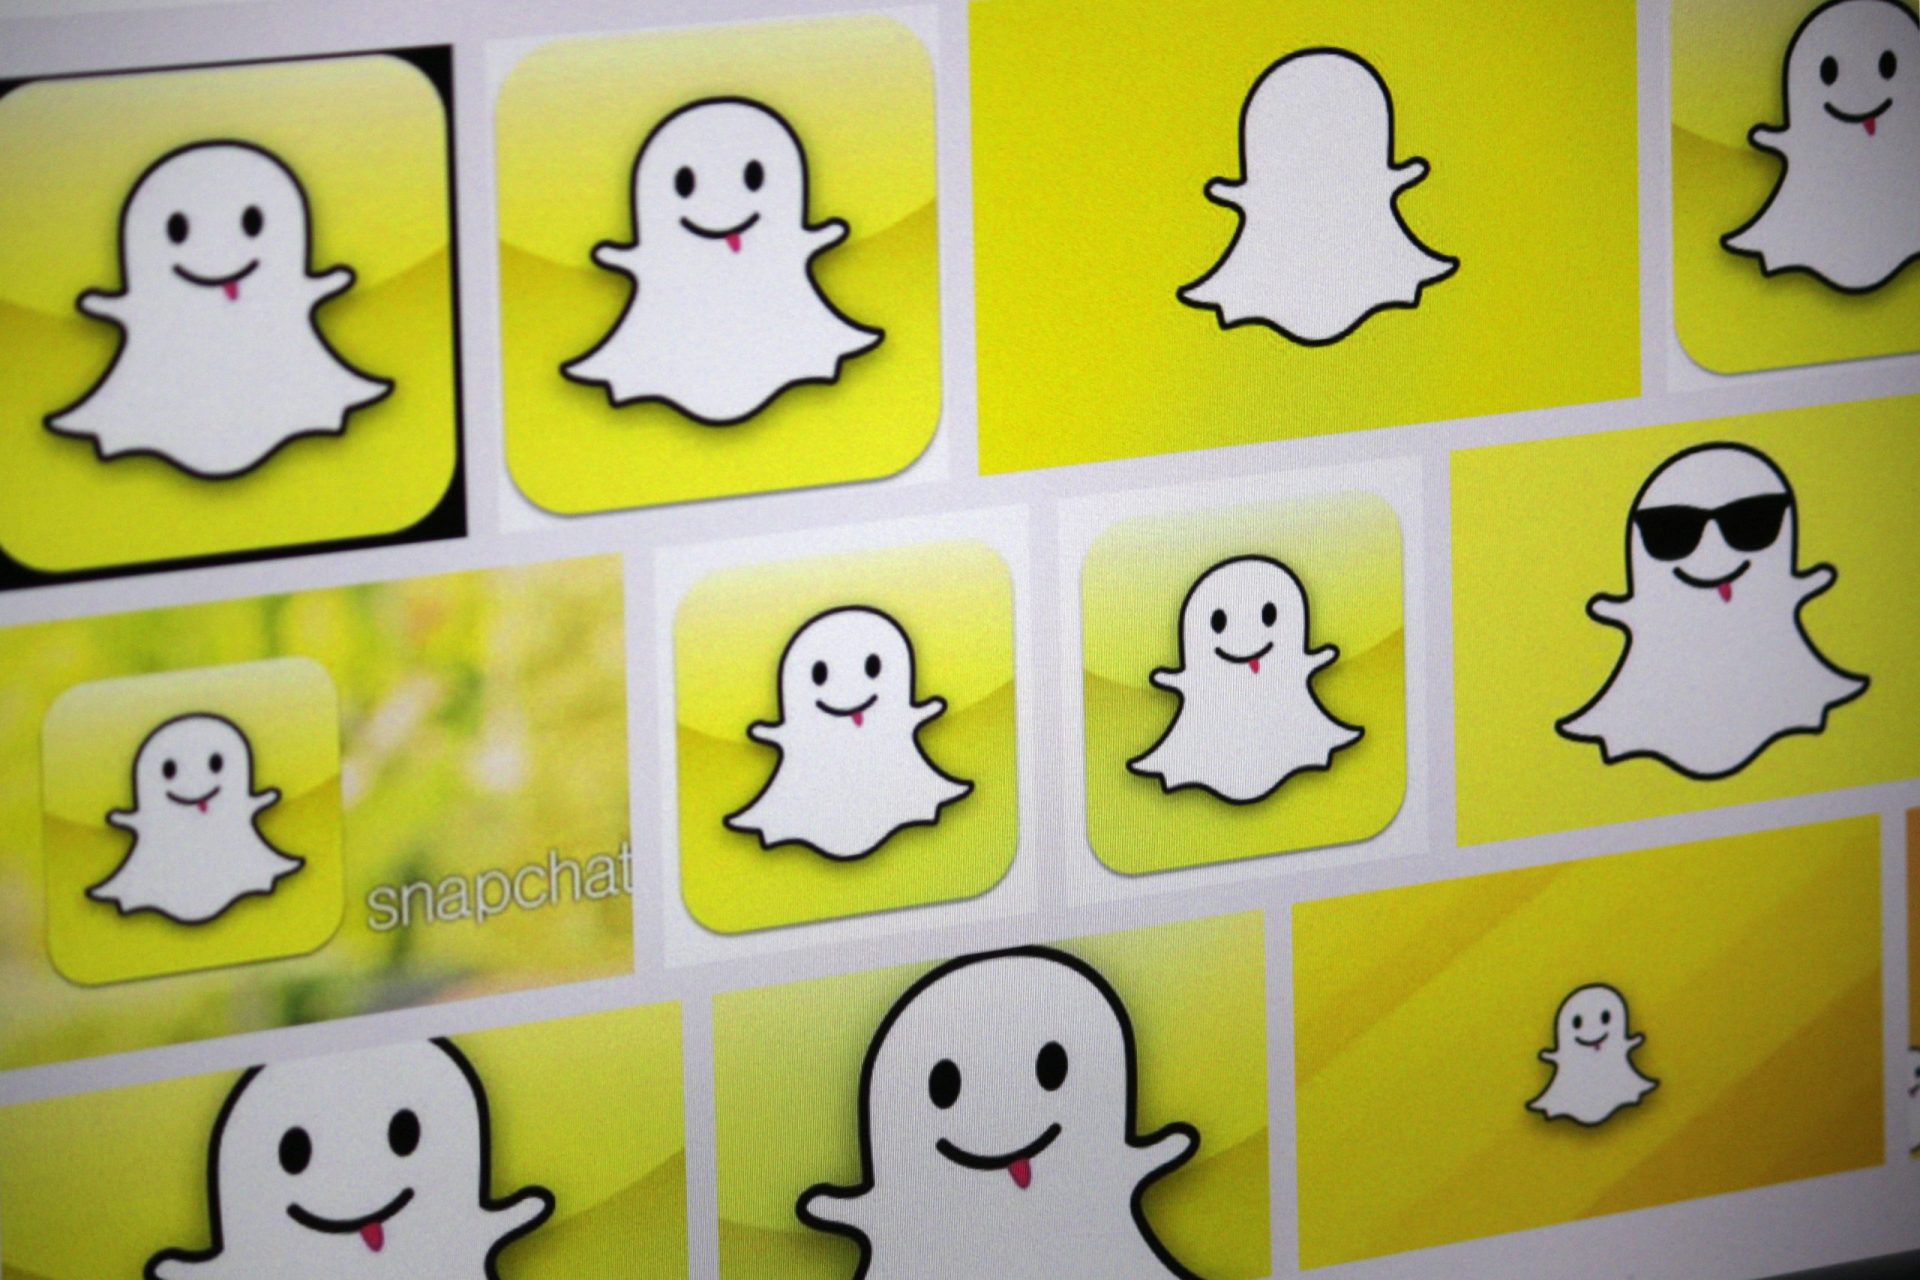 Fundador do Snapchat está a ser perseguido… no Snapchat